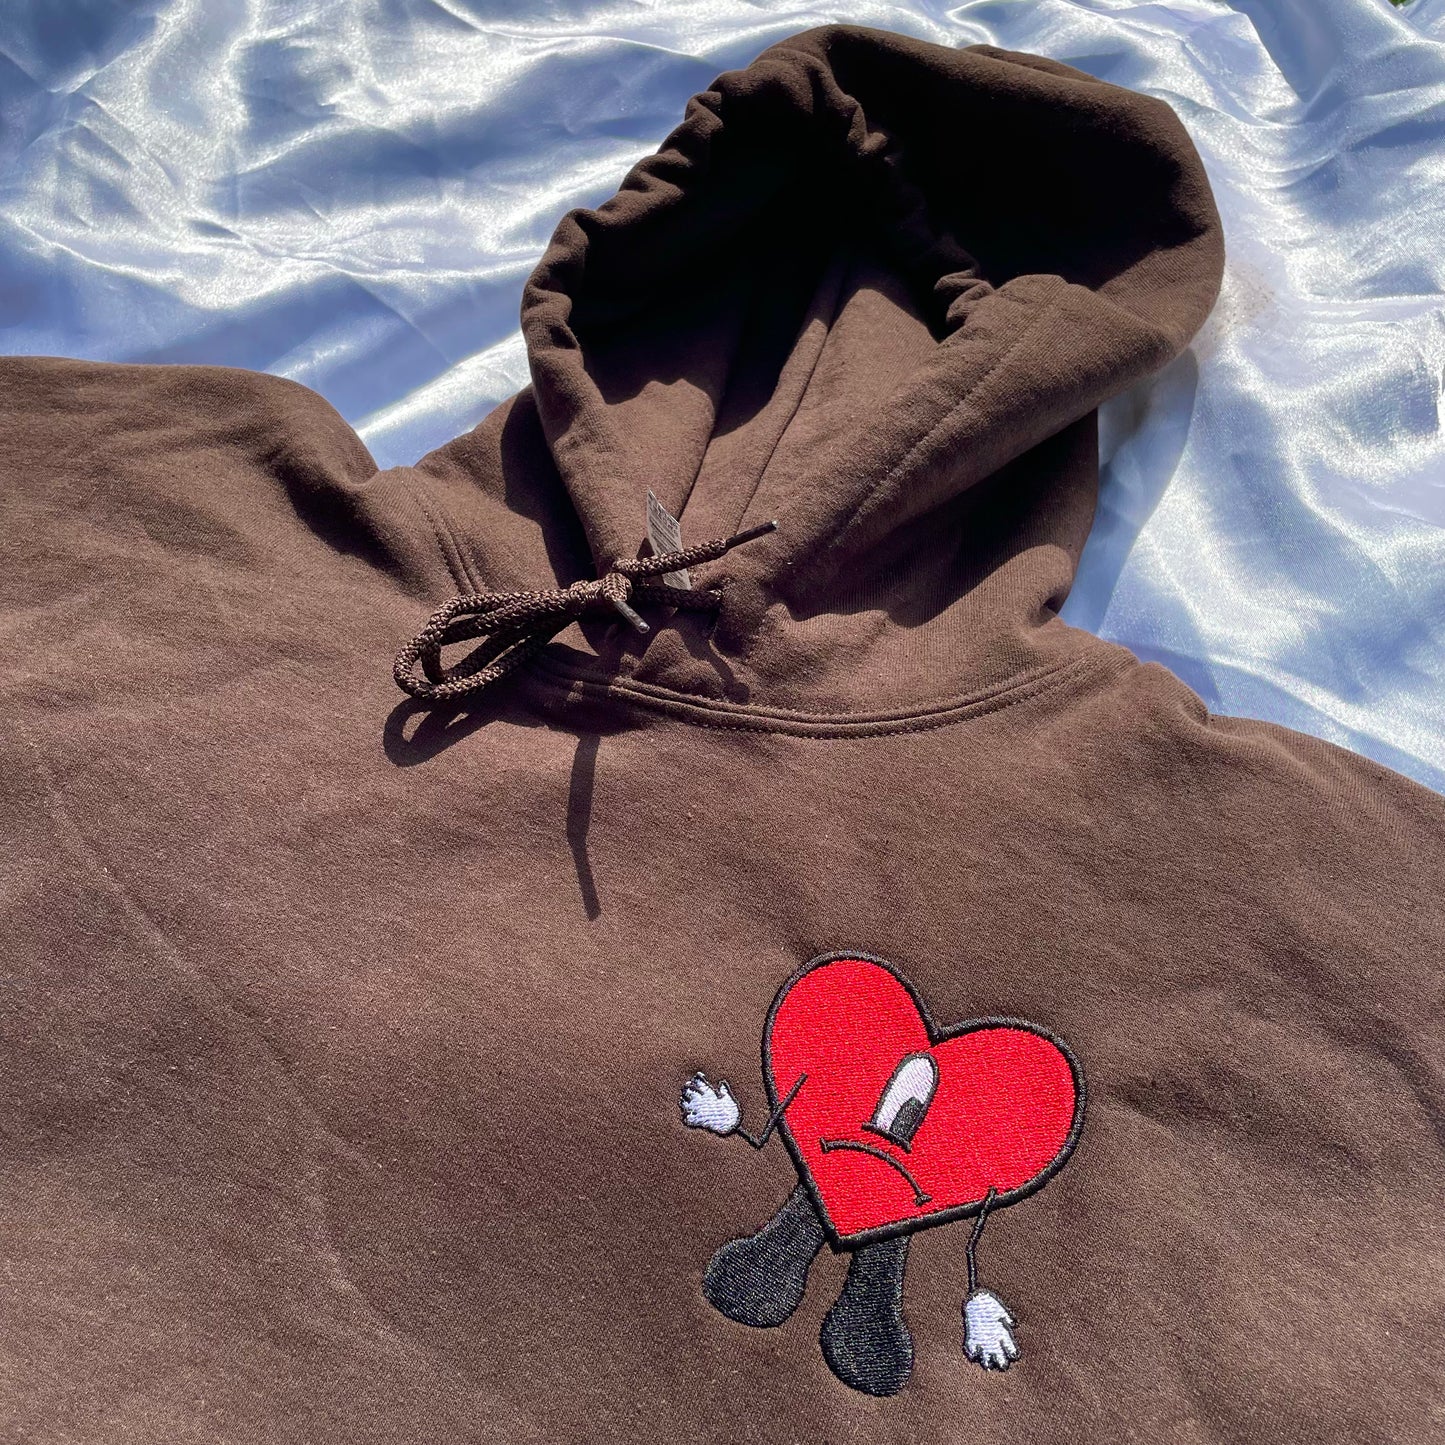 Bad Bunny Inspired Heart Sweatshirt/hoodie